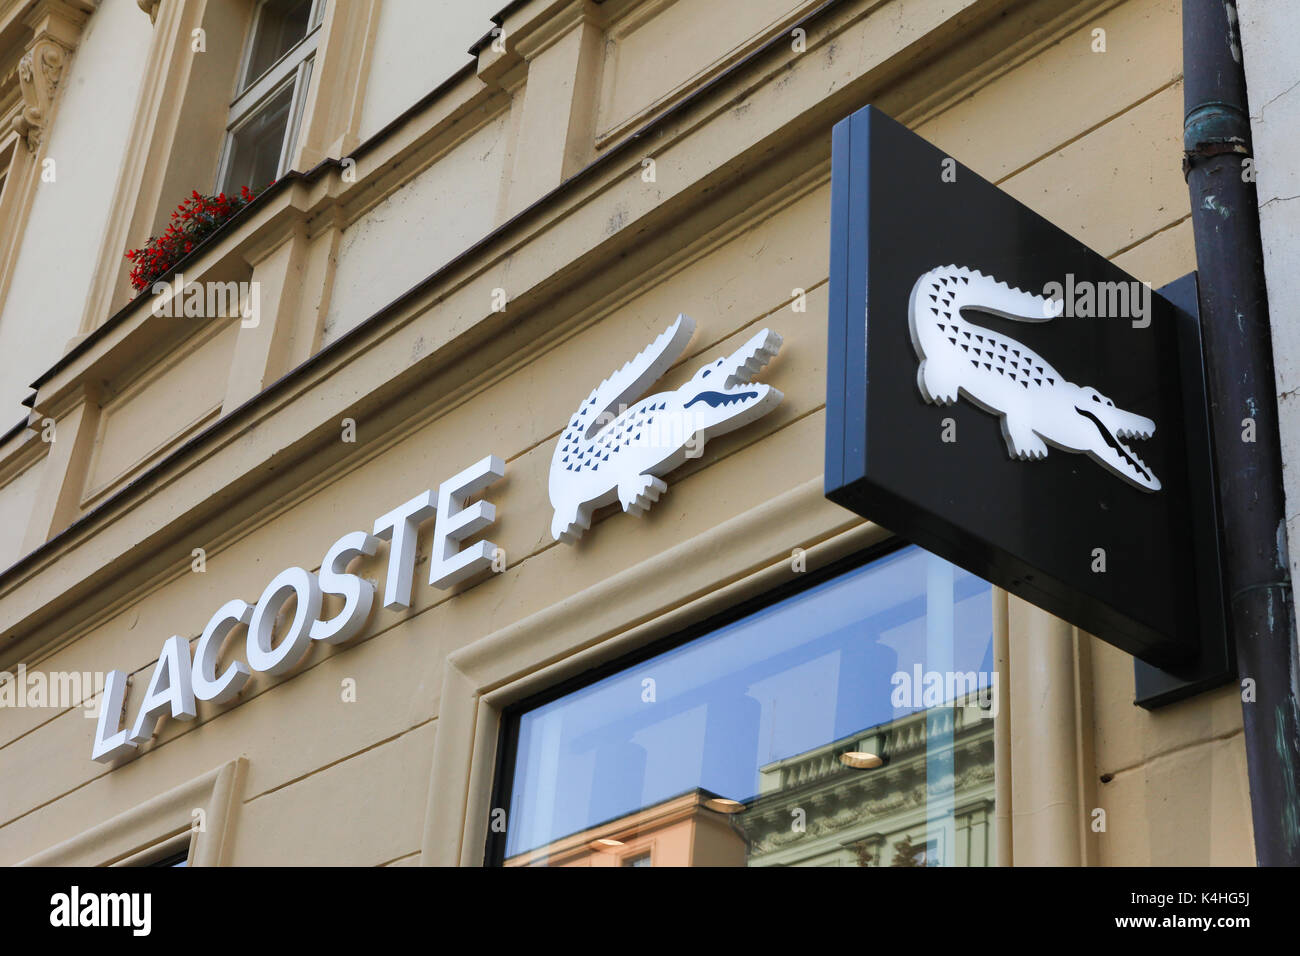 Lacoste segno su un negozio. Lacoste è un francese di società di abbigliamento che vende high-end di abbigliamento, calzature, profumo, pelletteria, e il più famoso polo s Foto Stock